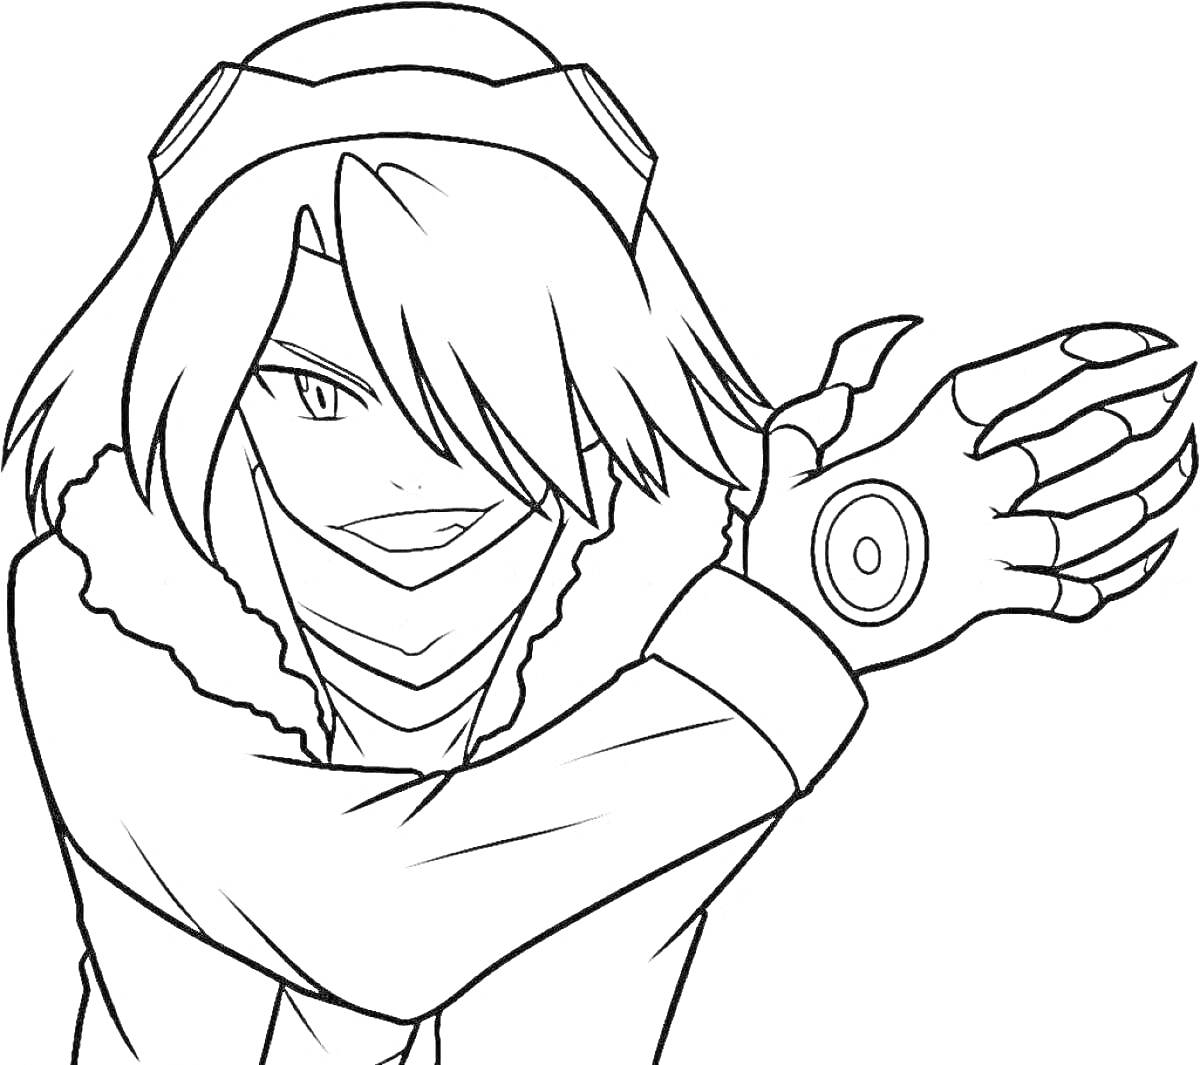 Раскраска Аниме персонаж-убийца в плаще с меховым воротником, героем с длинными волосами, тайным оружием на руке